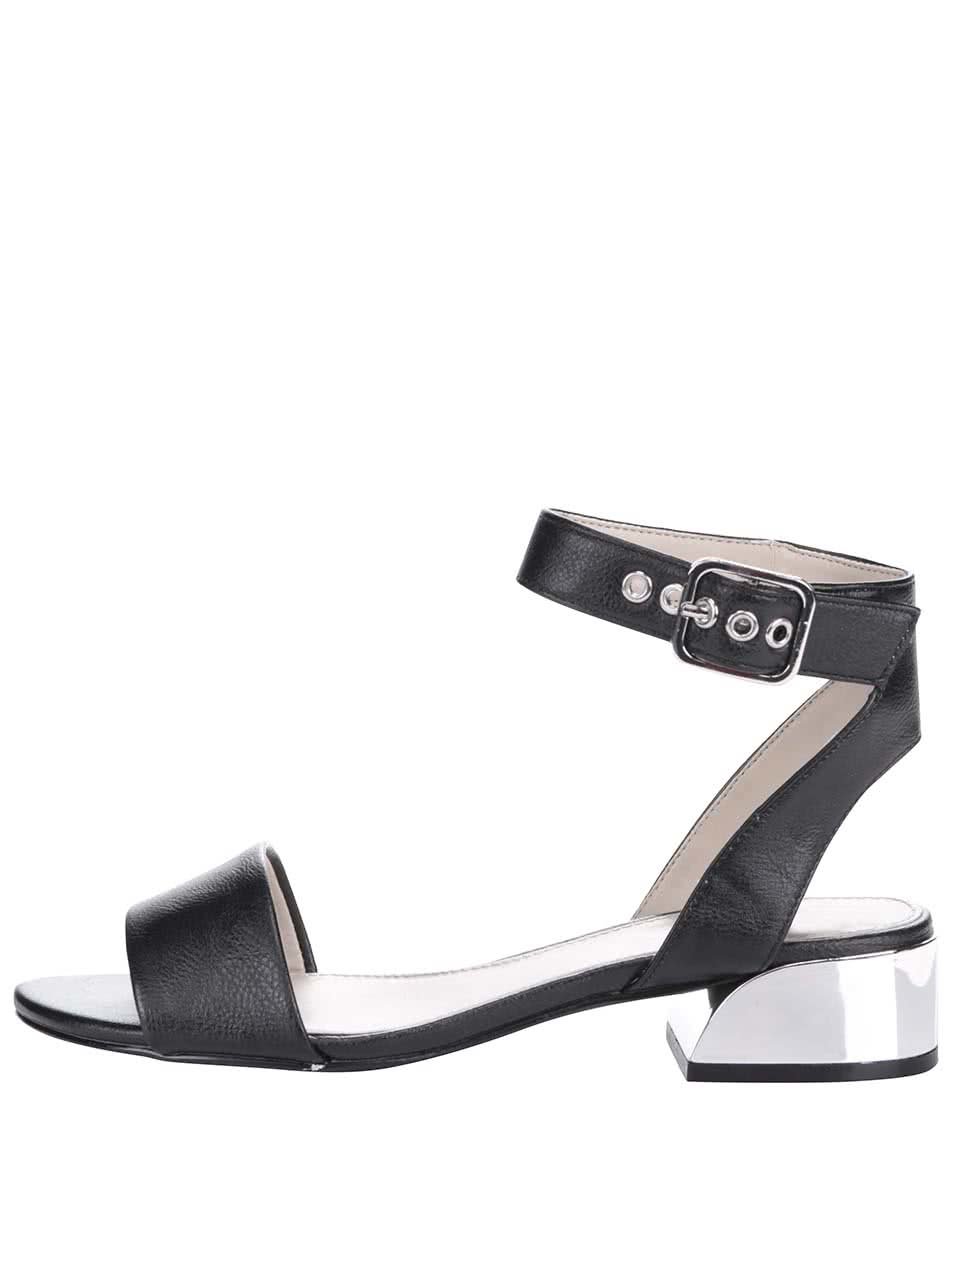 Černé sandály na podpatku s detaily ve stříbrné barvě ALDO Riana